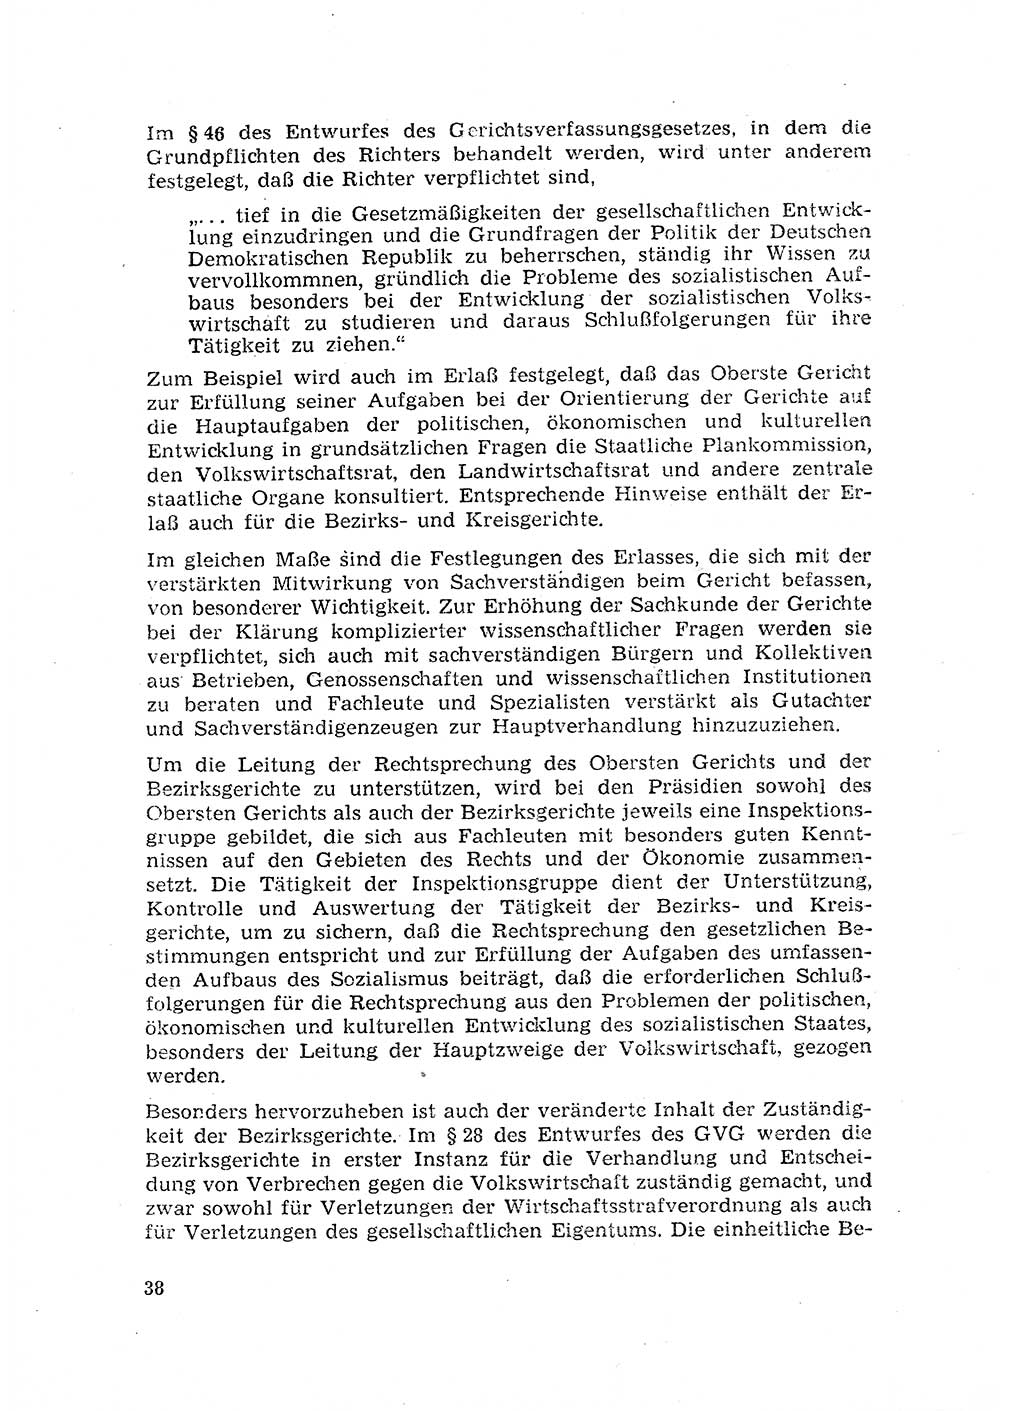 Rechtspflegeerlaß [Deutsche Demokratische Republik (DDR)] 1963, Seite 38 (R.-Pfl.-Erl. DDR 1963, S. 38)